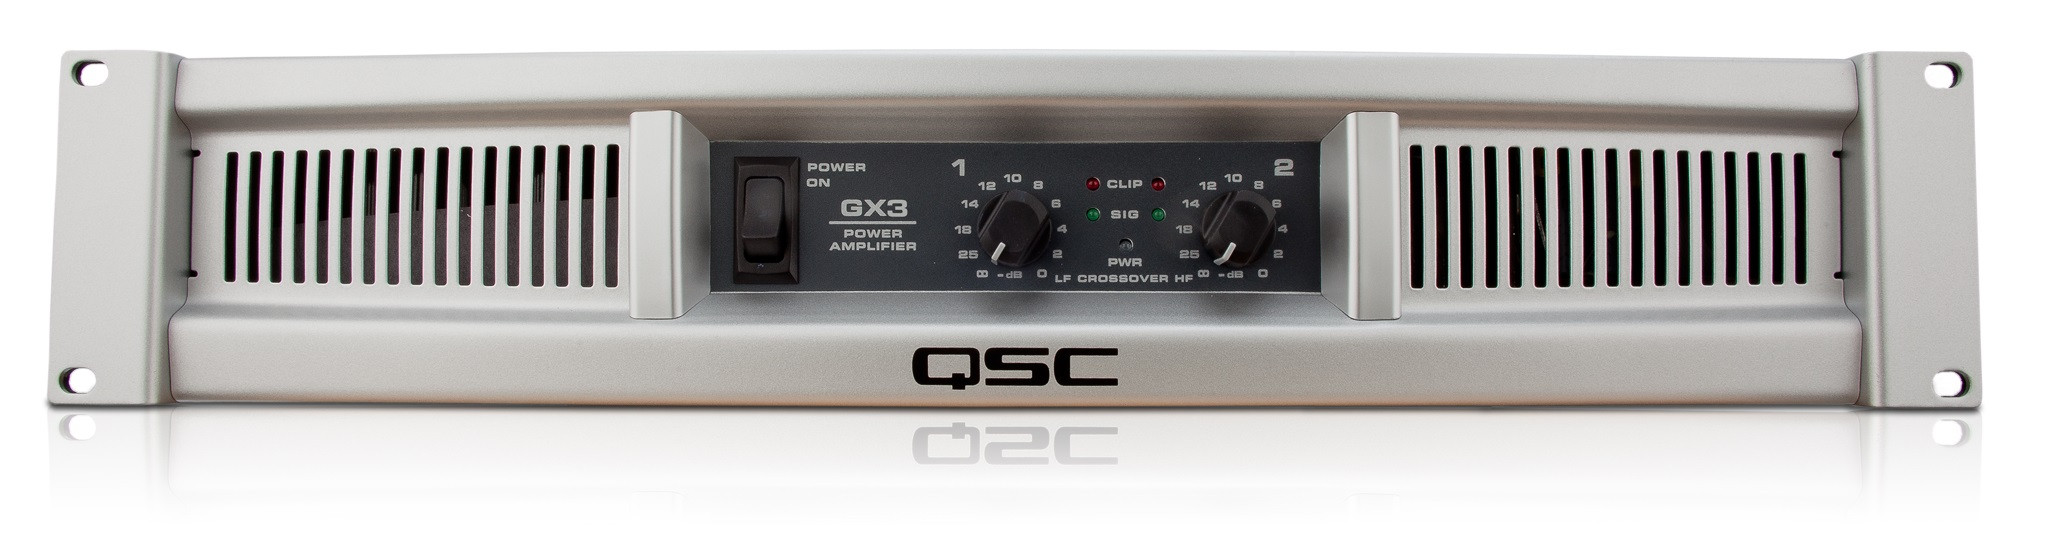 Hlavní obrázek Dvoukanálové zesilovače QSC GX3